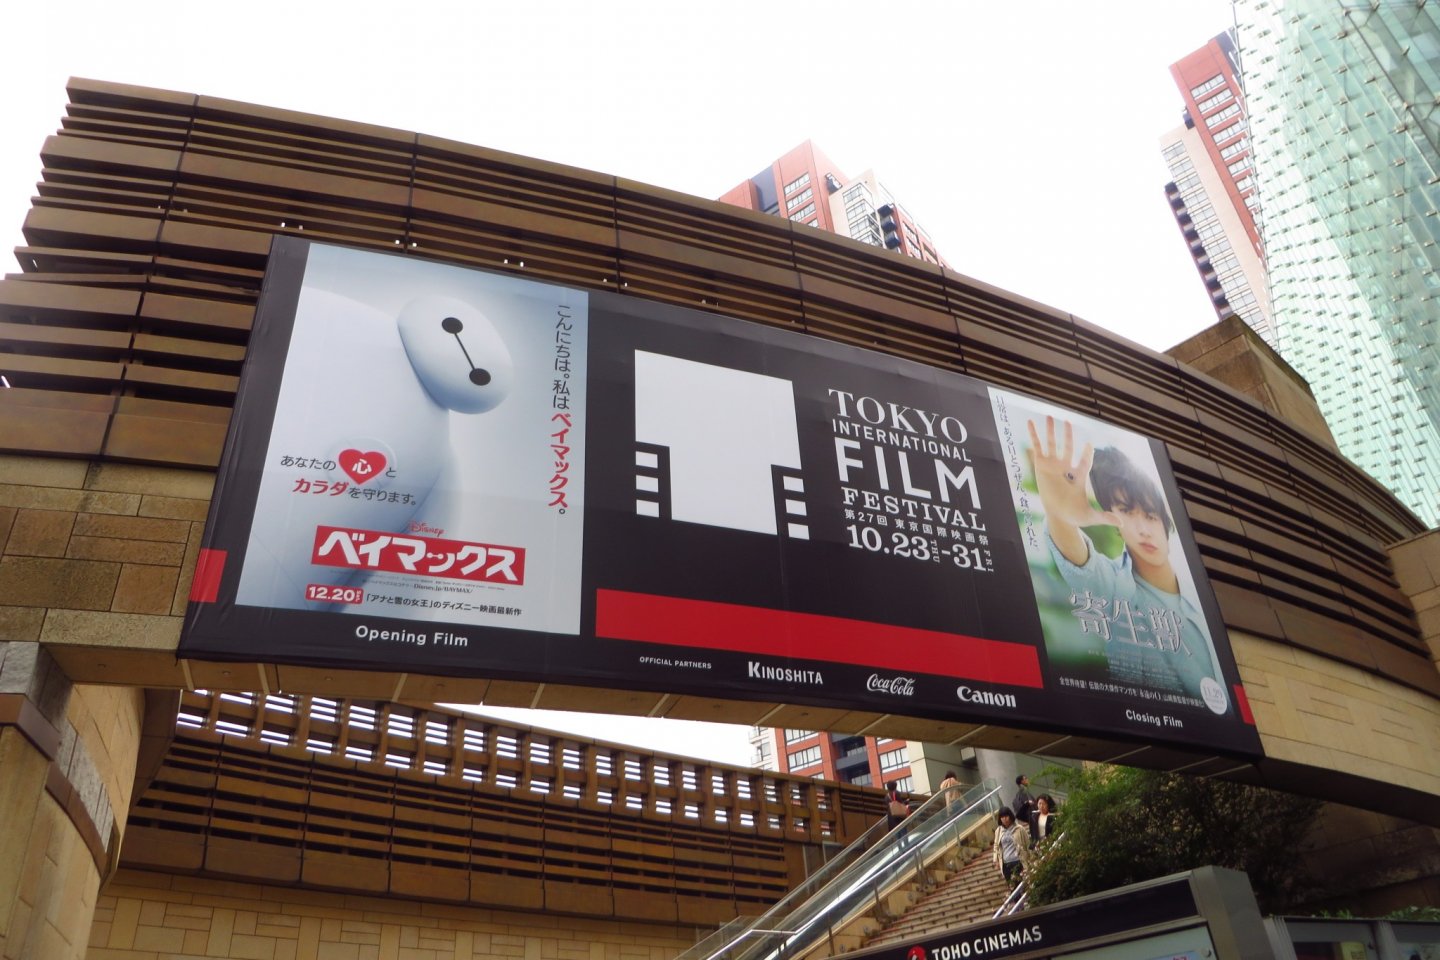 Festival ini utamanya akan diadakan di bioskop Toho di Roppongi Hills